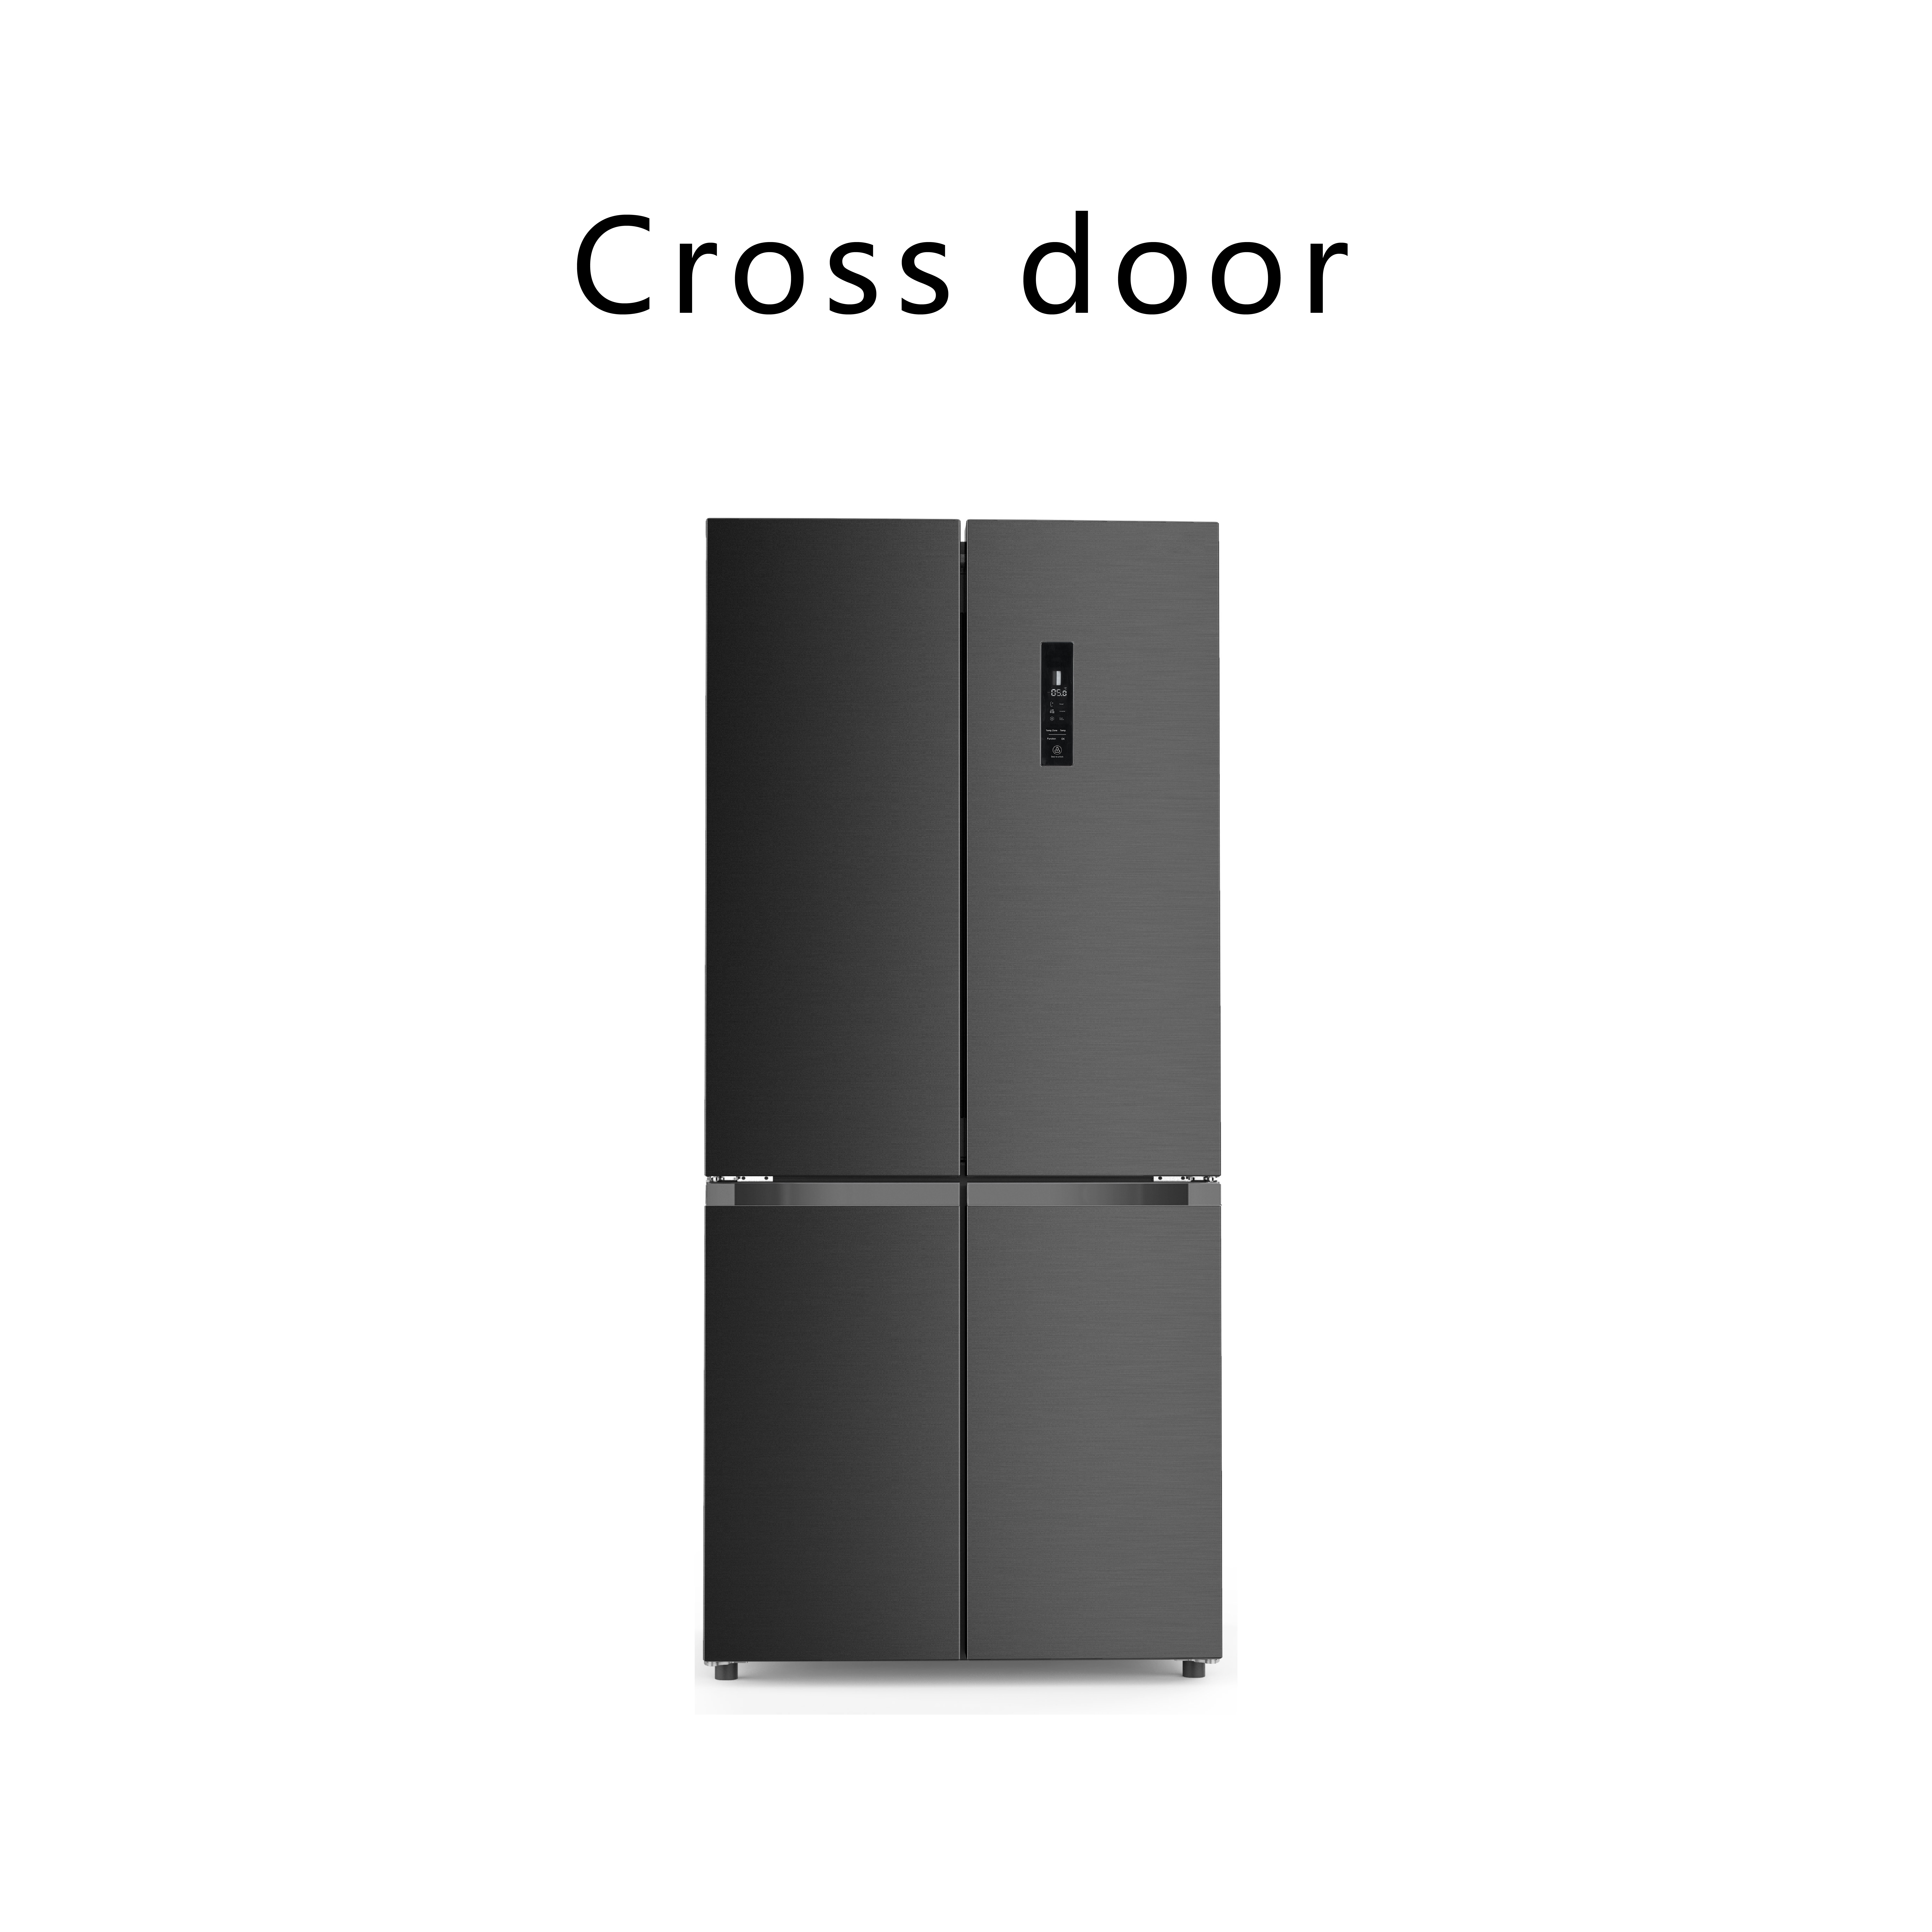 Cross door